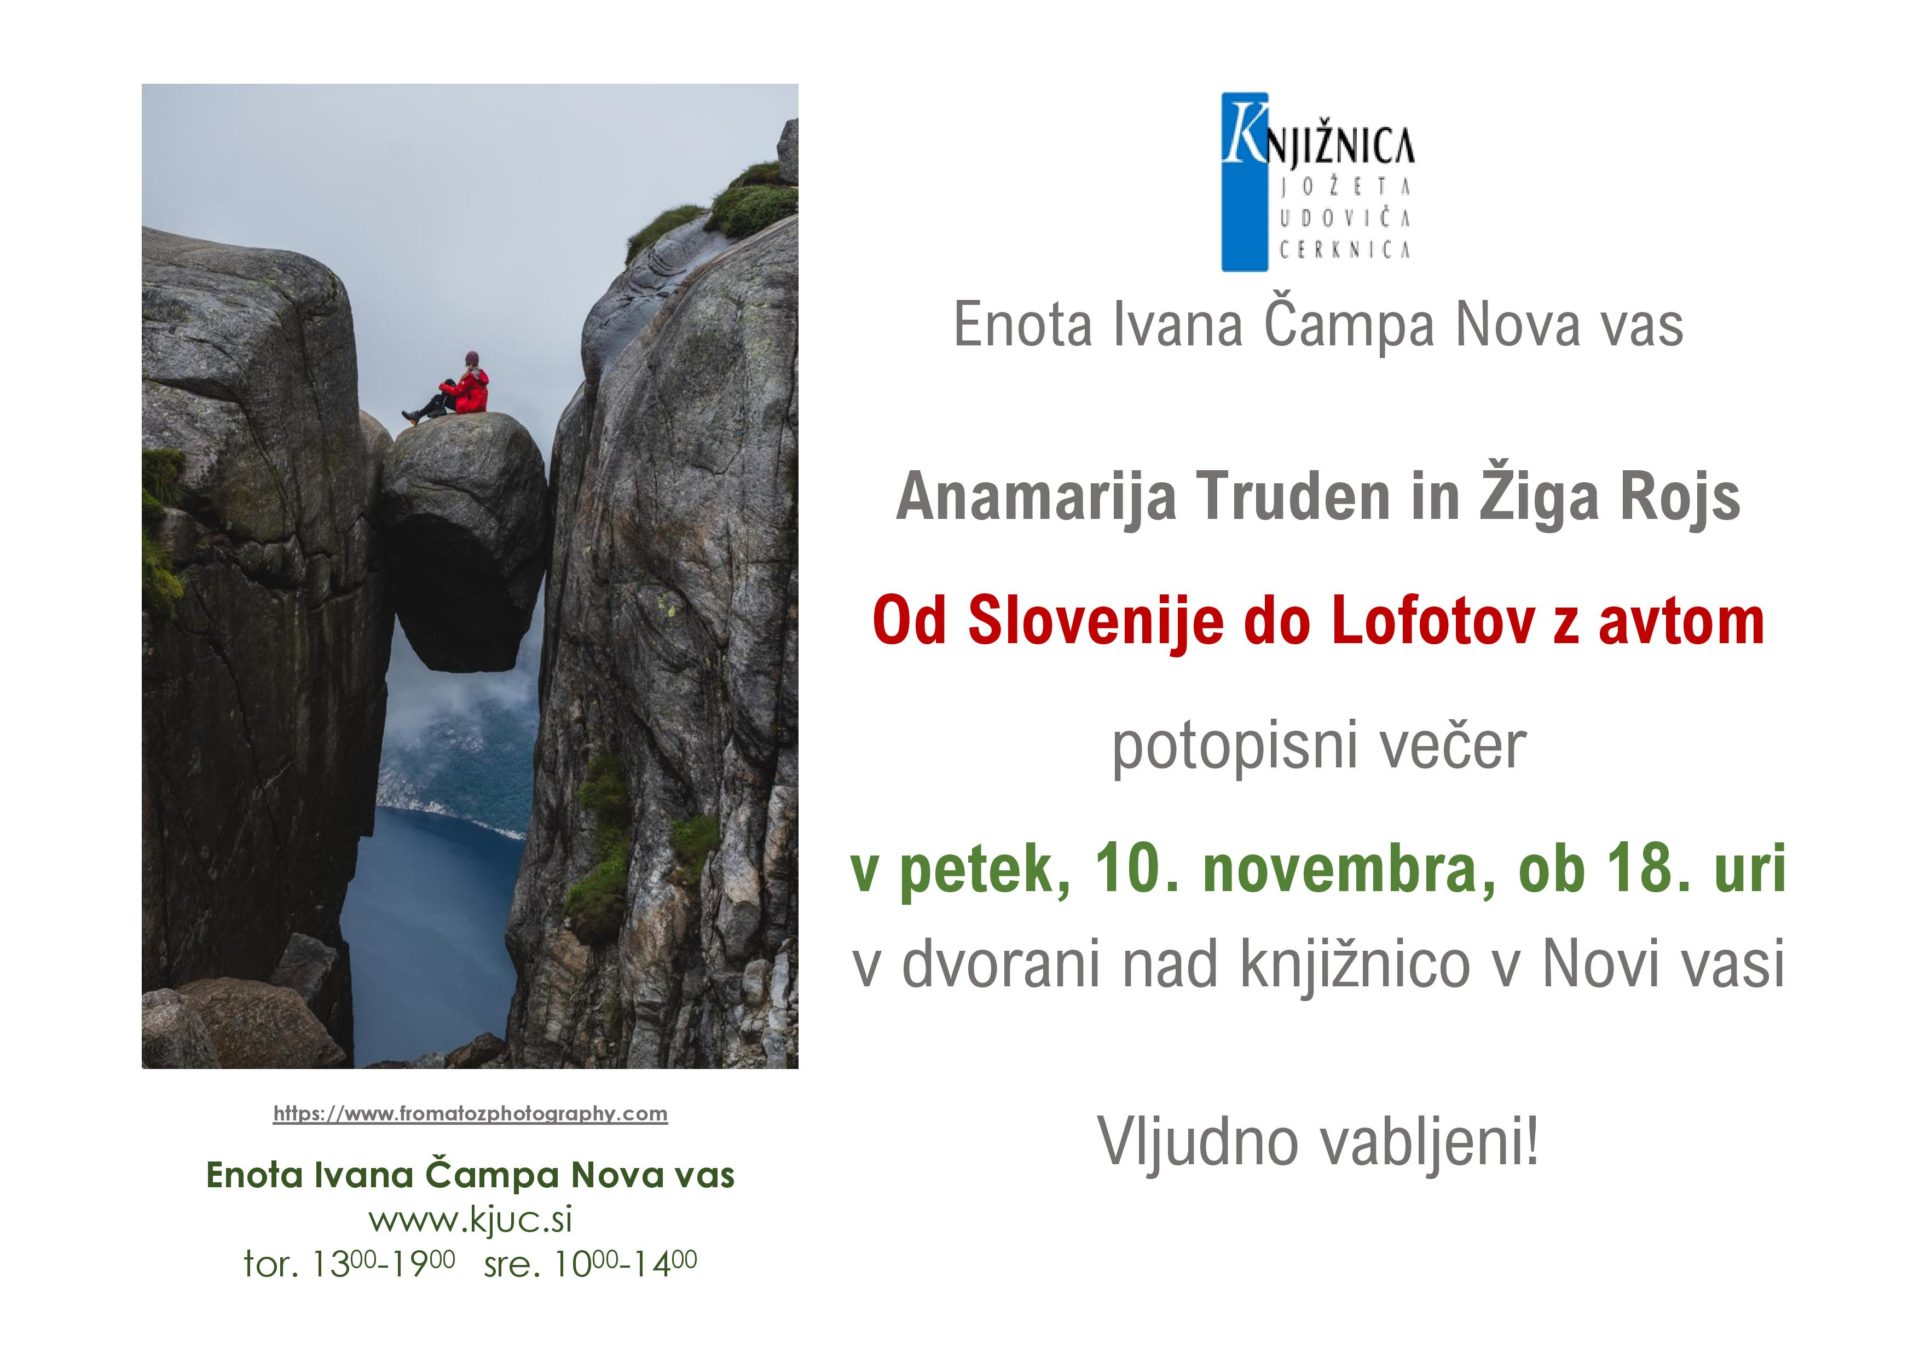 Truden. Rojs page 001 - Anamarija Truden in Žiga Rojs: Od Slovenije do Lofotov z avtom - potopisno predavanje